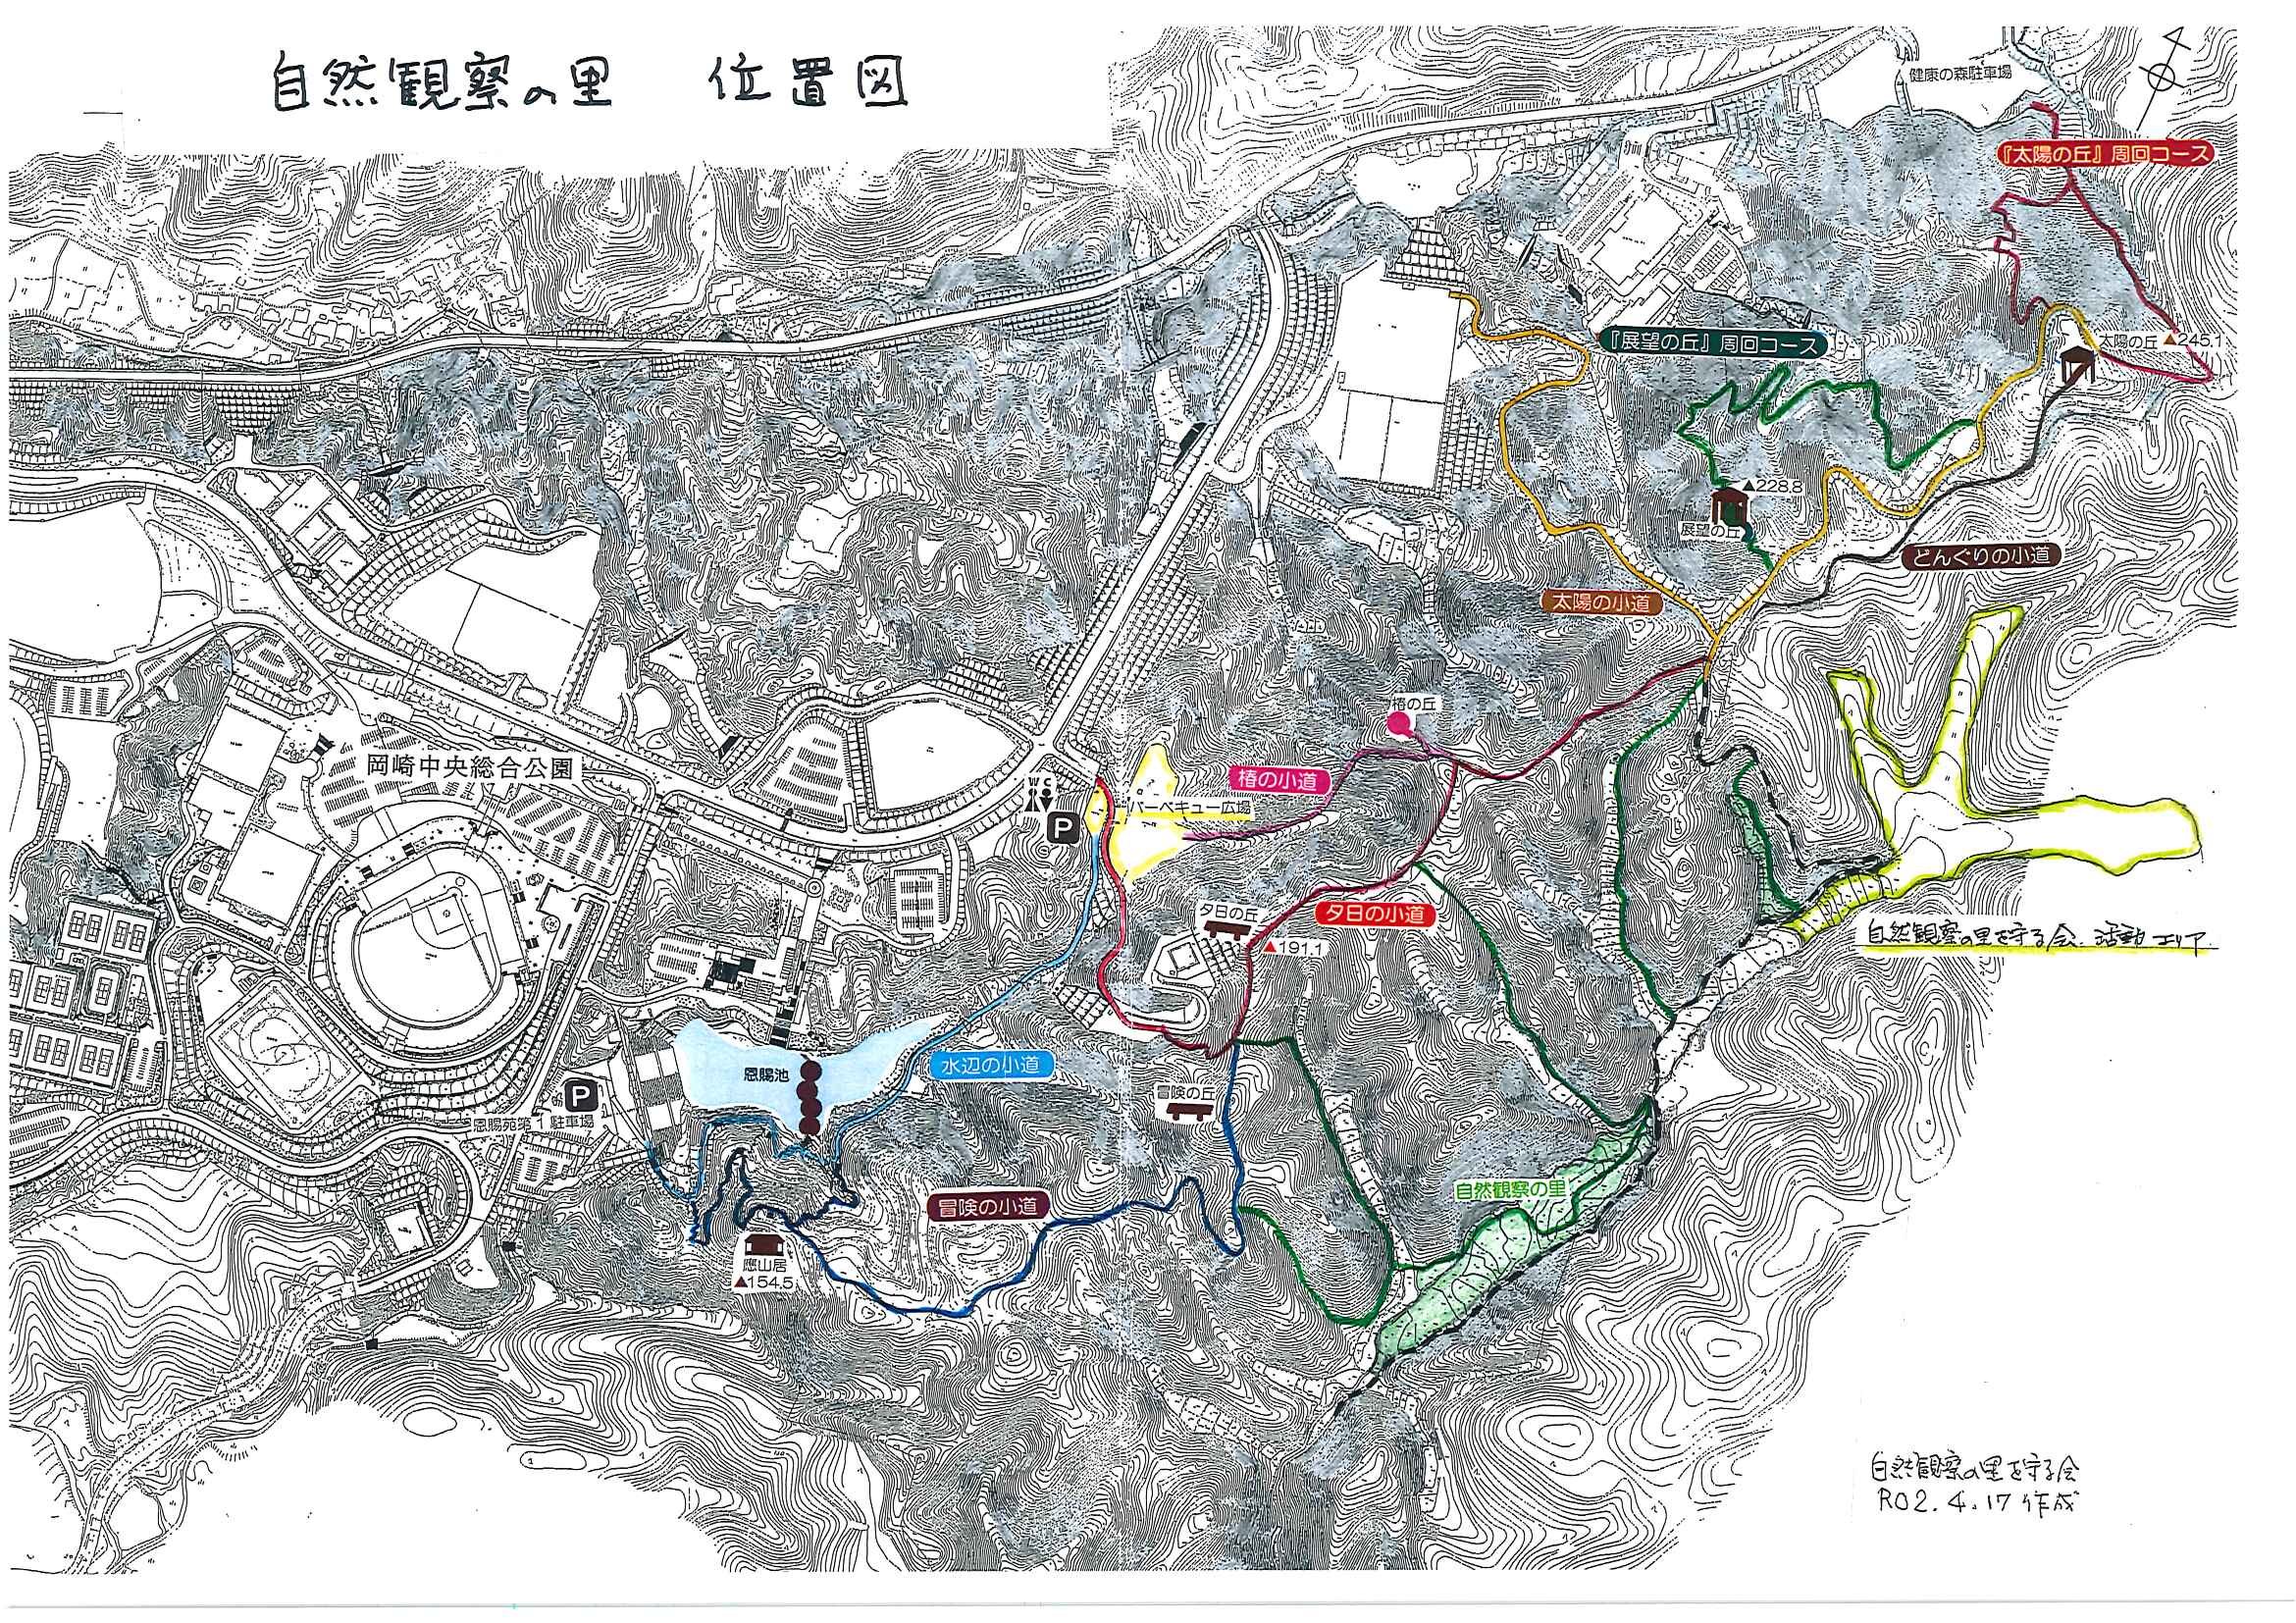 岡崎中央総合公園に隣接する自然観察の里への地図